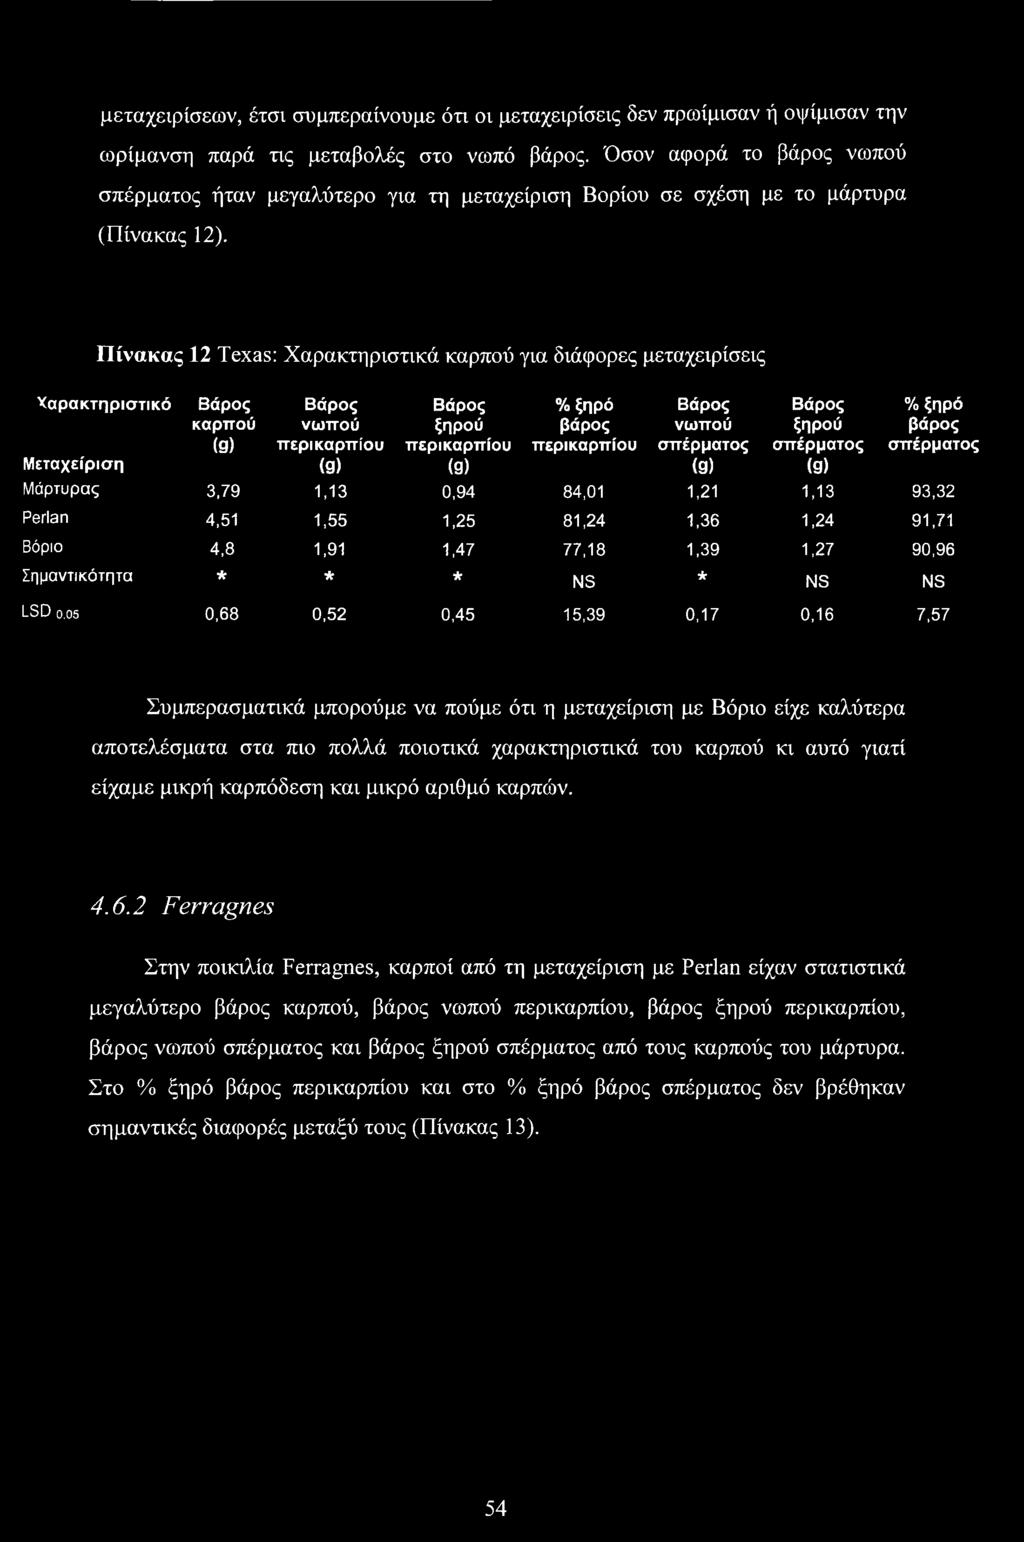 Πίνακας 12 Texas: Χαρακτηριστικά καρπού για διάφορες μεταχειρίσεις Χαρακτηριστικό Βάρος καρπού (9) Βάρος νωπού περικαρπίου (9) Βάρος ξηρού περικαρπίου (9) % ξηρό βάρος περικαρπίου Βάρος νωπού